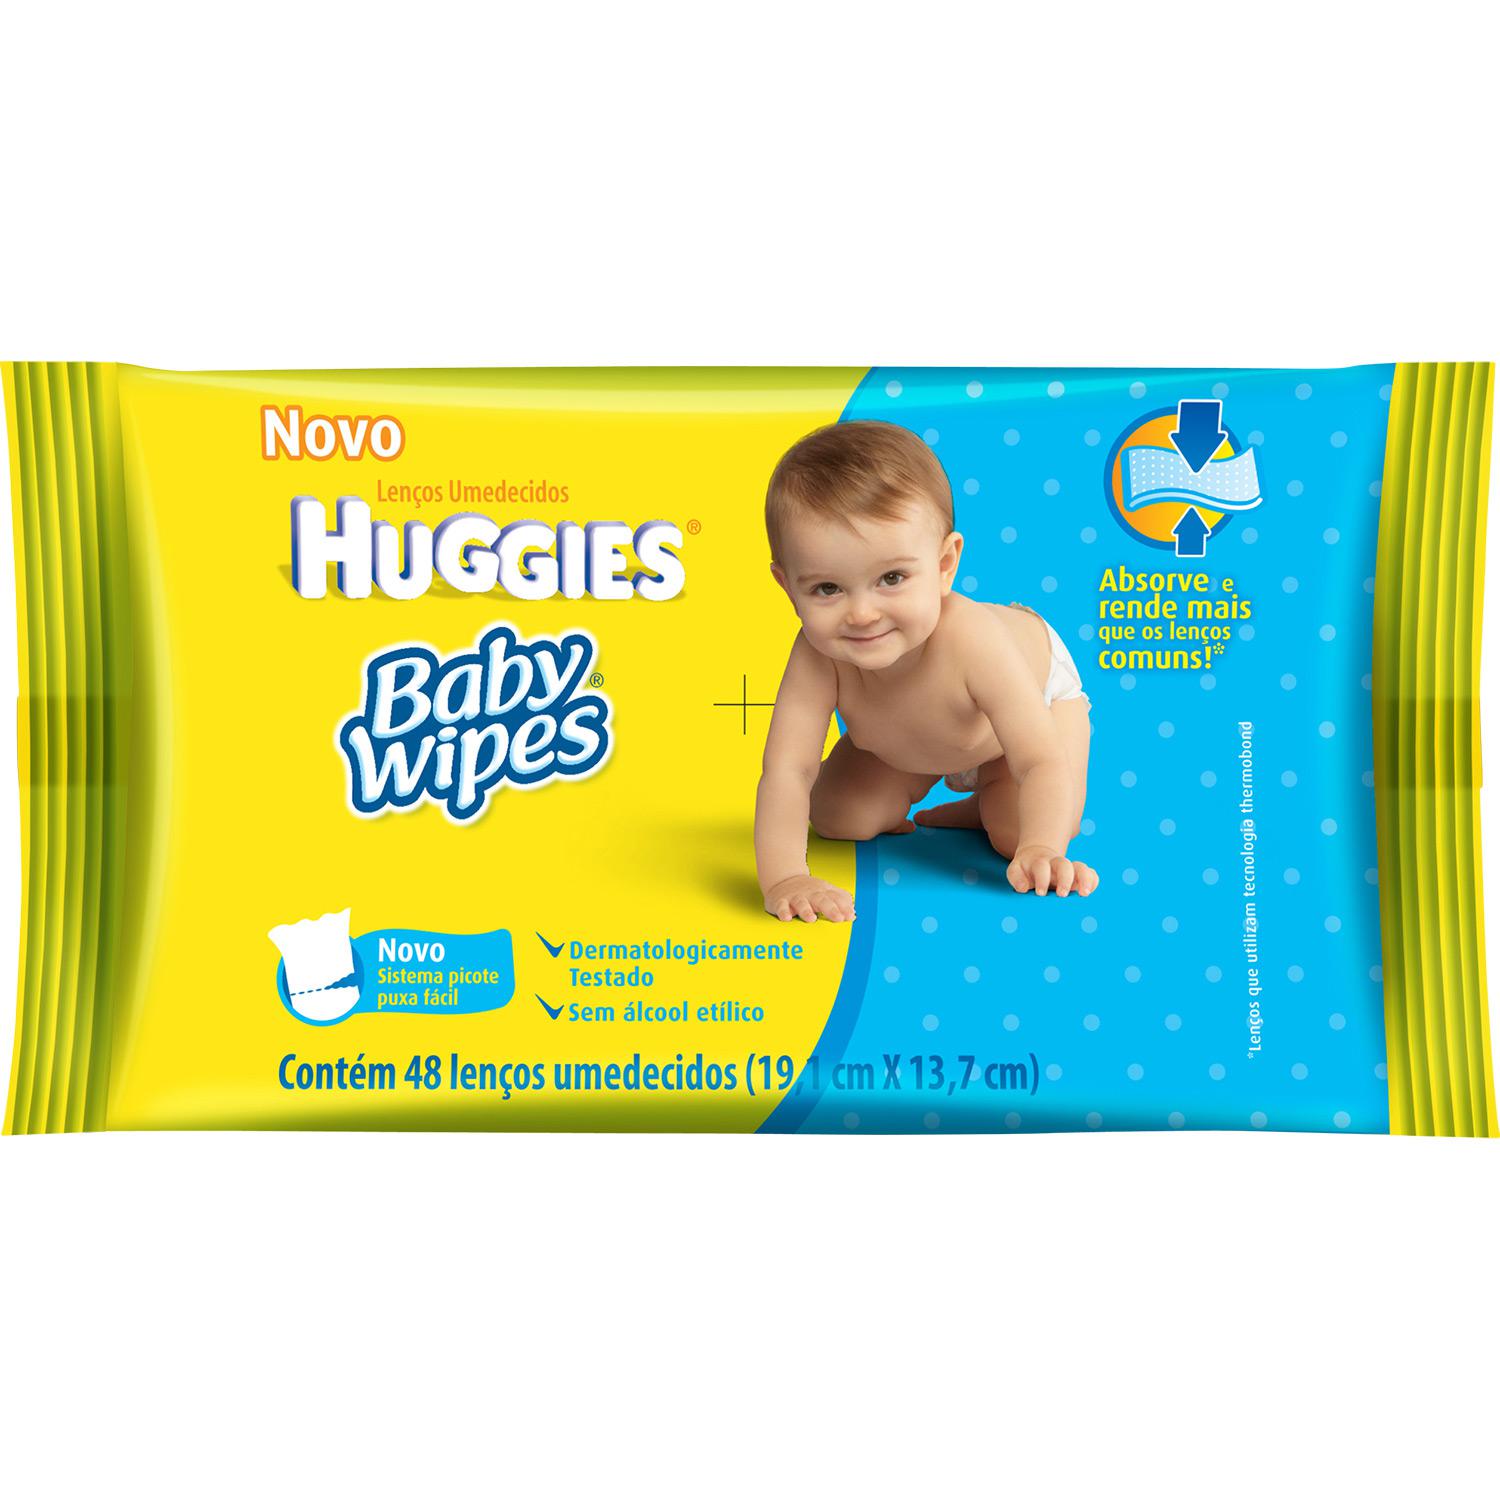 Lenços Umedecidos Huggies Baby Wipes 48 unidades é bom? Vale a pena?